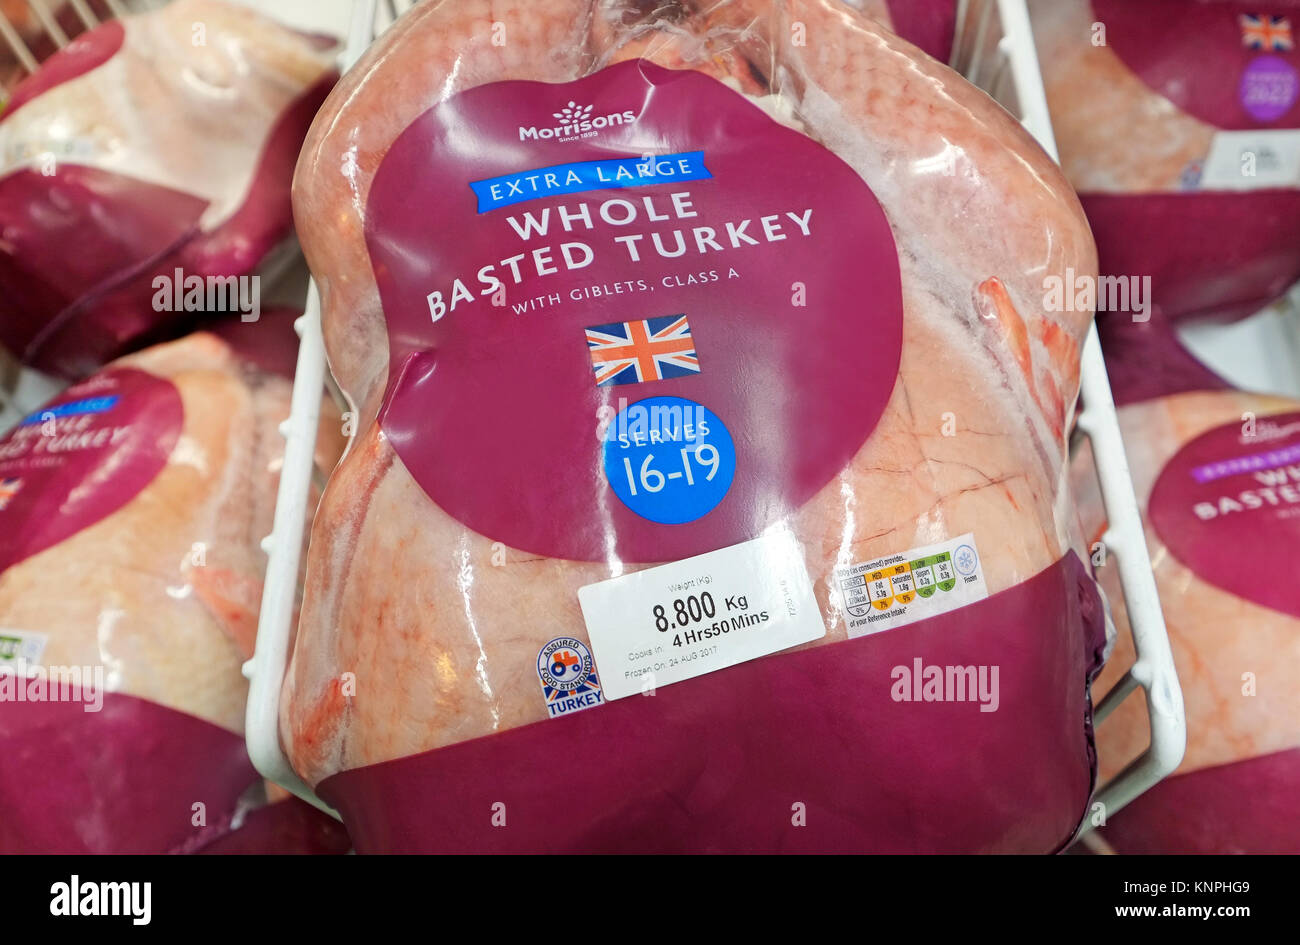 extra large frozen whole basted turkey in supermarket freezer cabinet Stock Photo